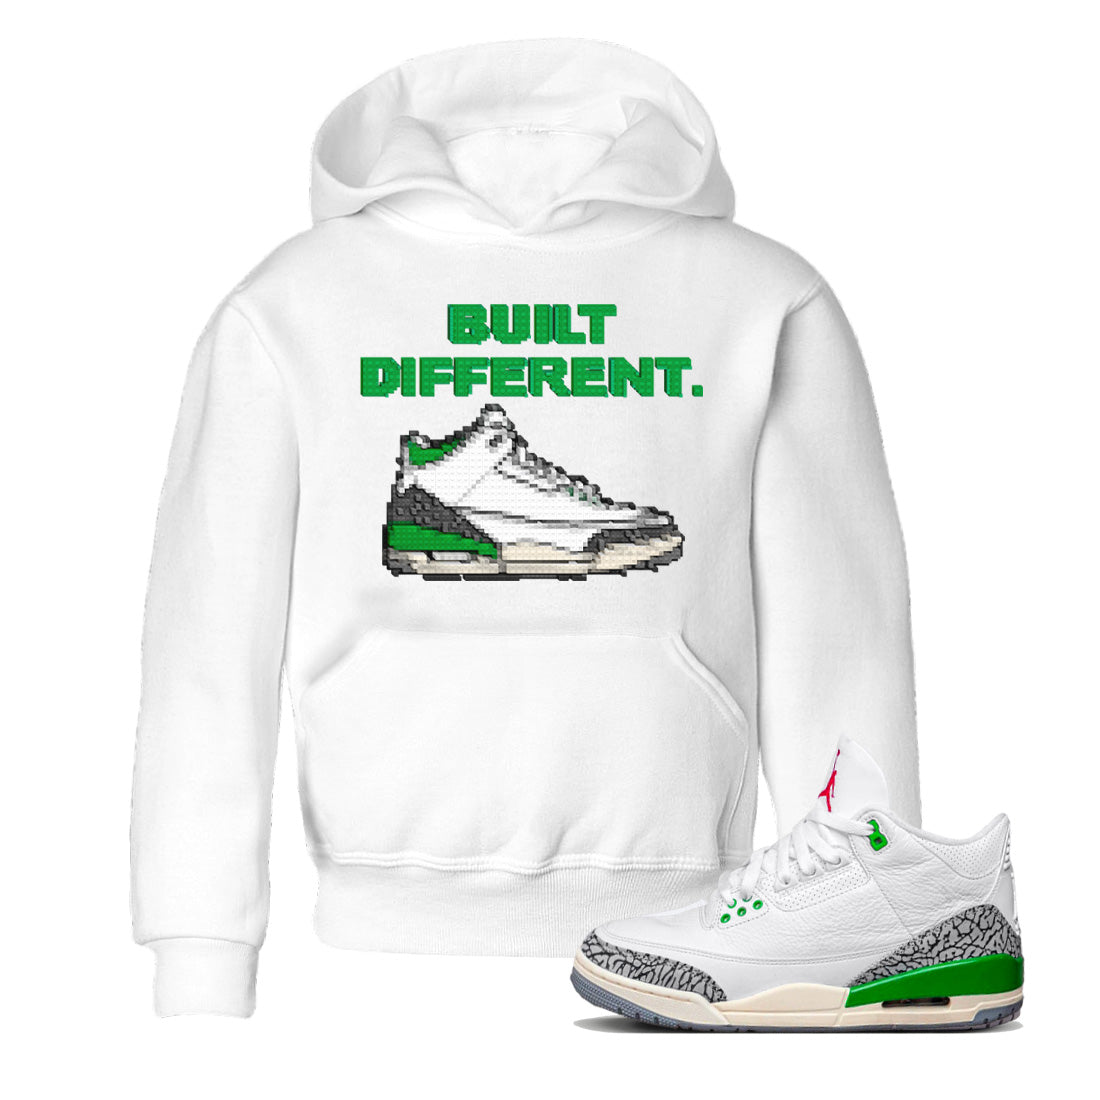 Air Jordan 3 Lucky Green Sneaker Tees Drip Gear Zone Built Different Sneaker Tees Air Jordan 3 WMNS Lucky Green Shirt Kids Shirts White 1